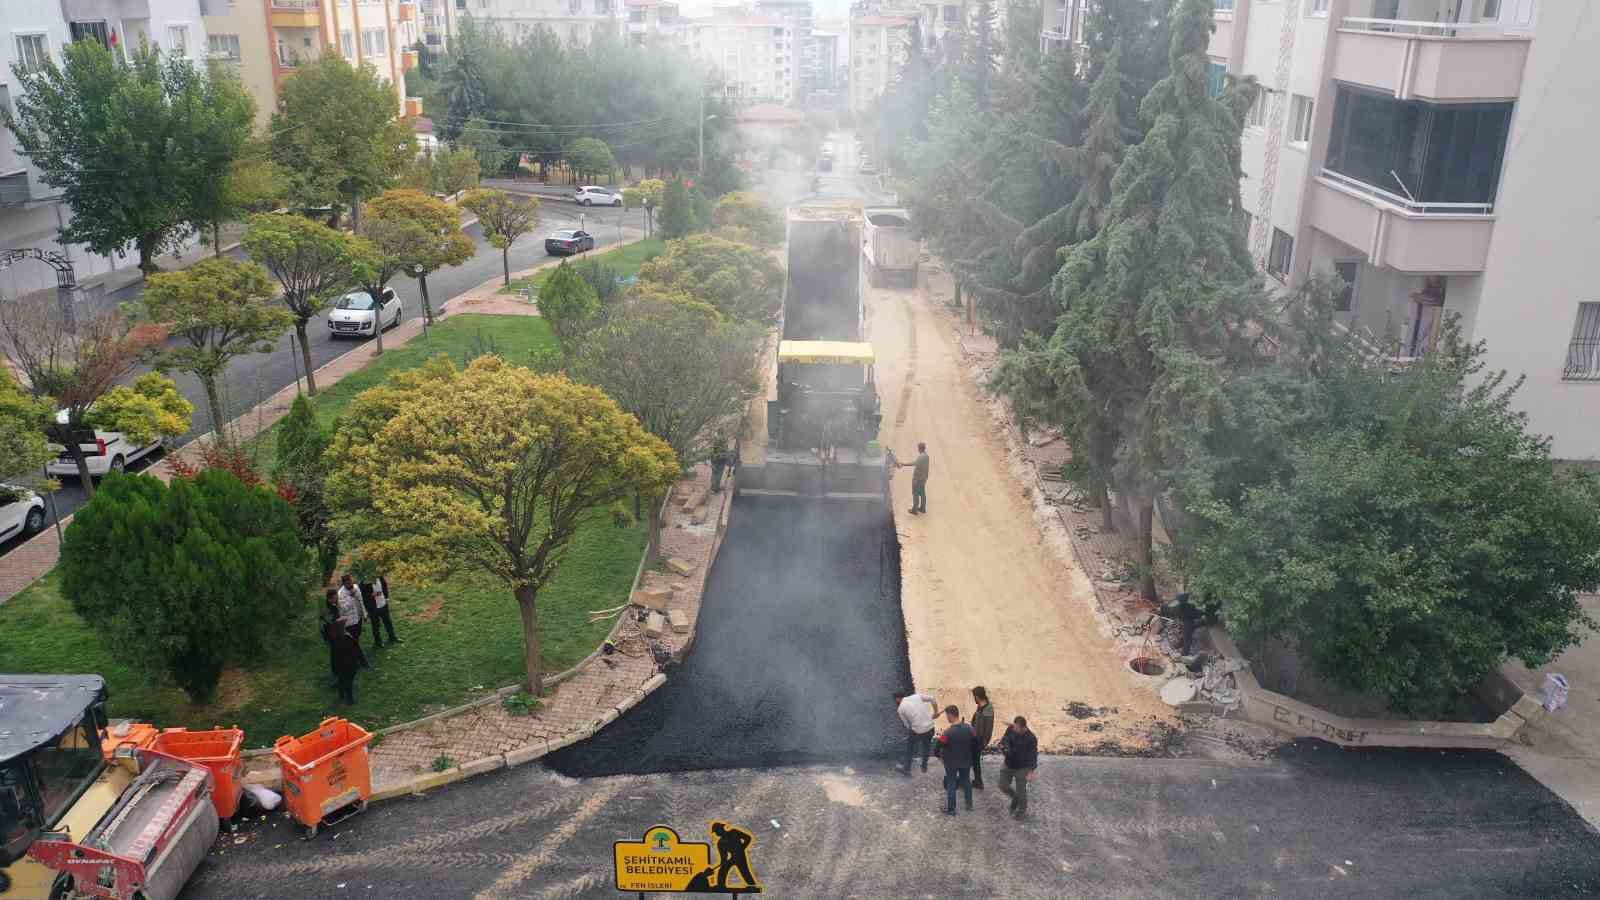 Şehitkamil’den Atatürk Mahallesi’ne asfalt yenileme çalışması
